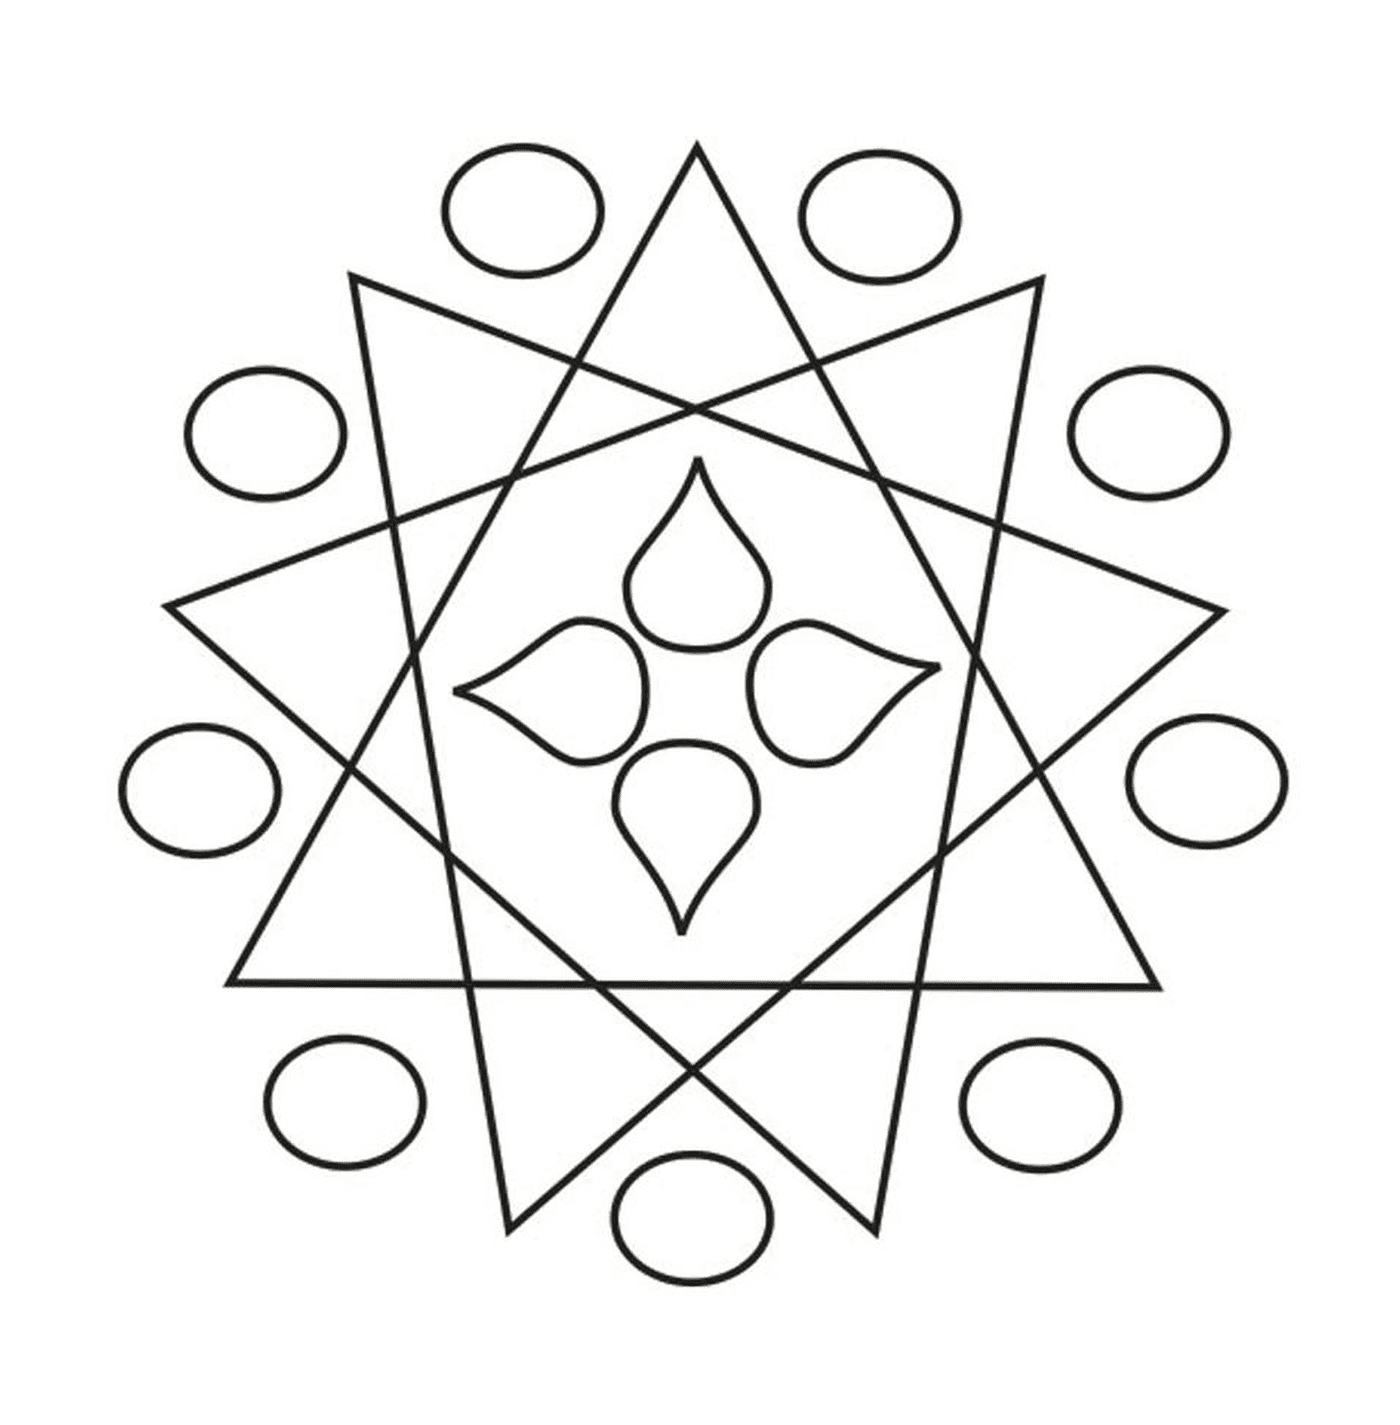   Un dessin géométrique 